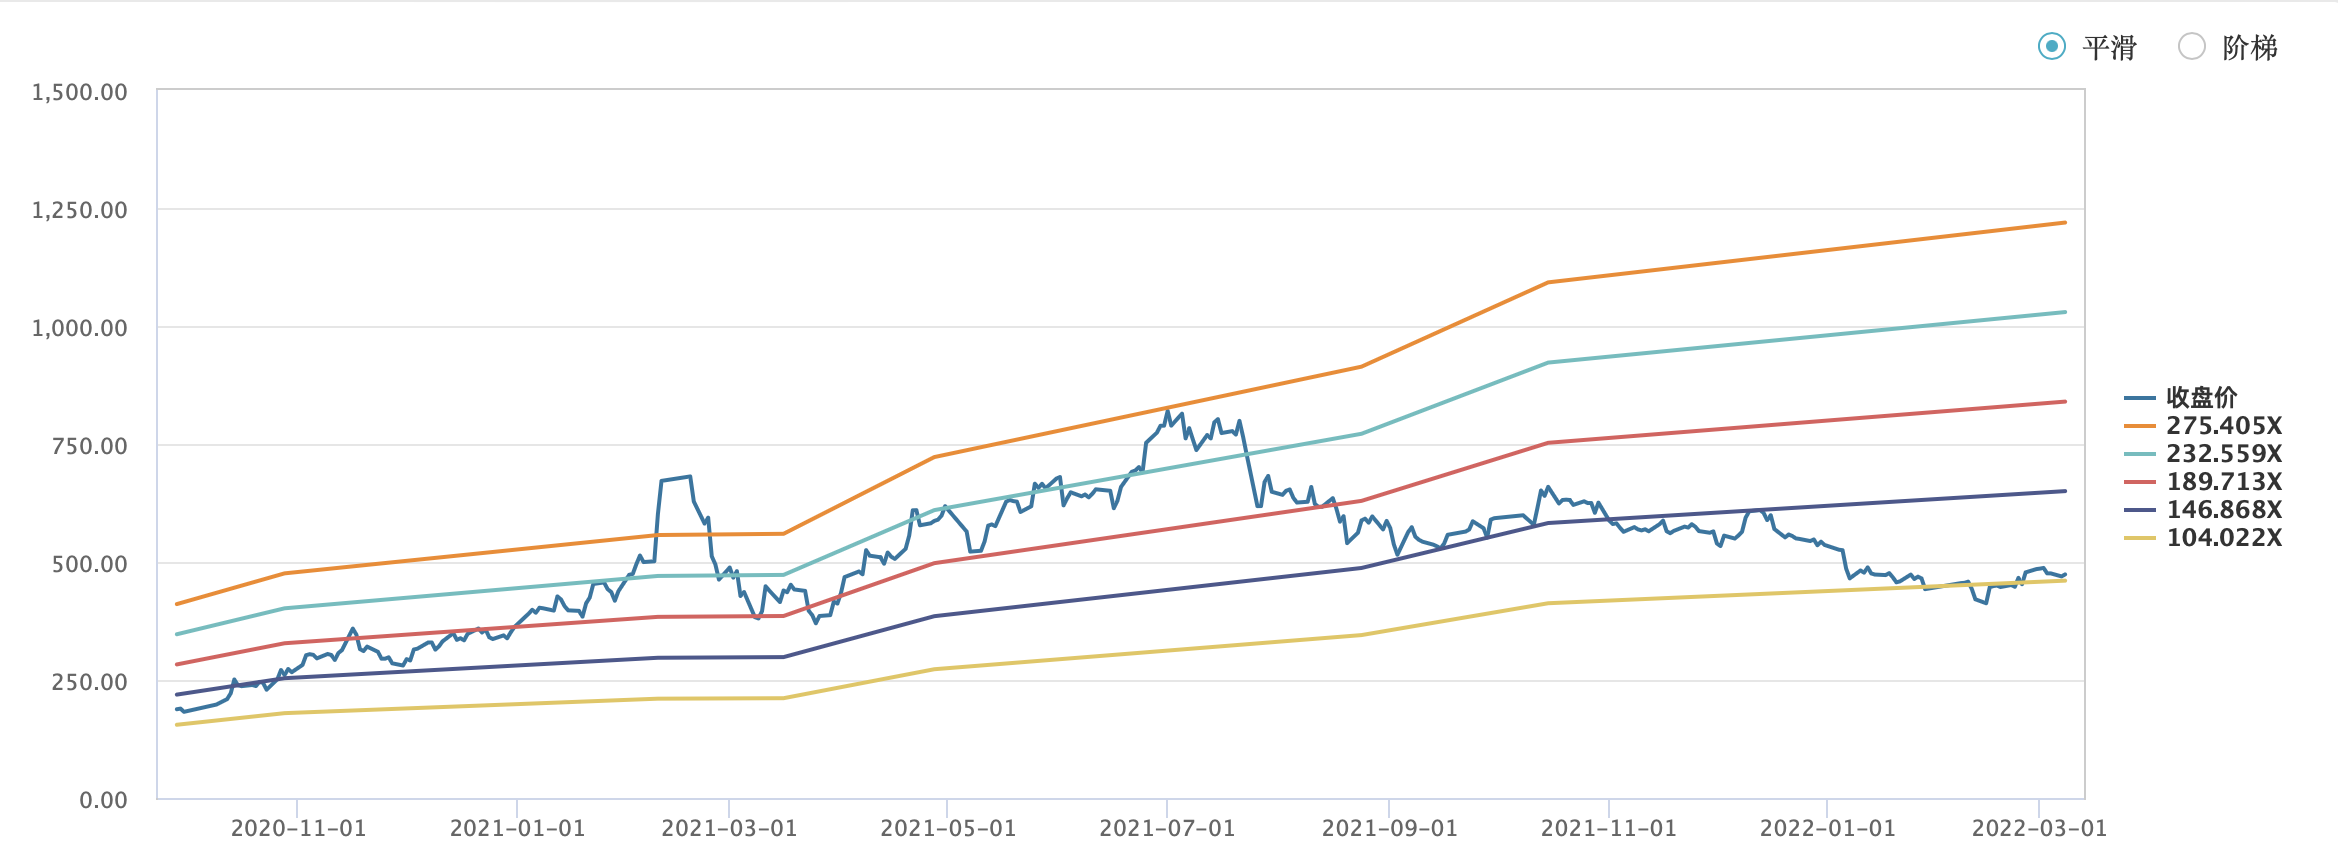 过去3年间爱美客股价对应市盈率走势图片来源：Wind